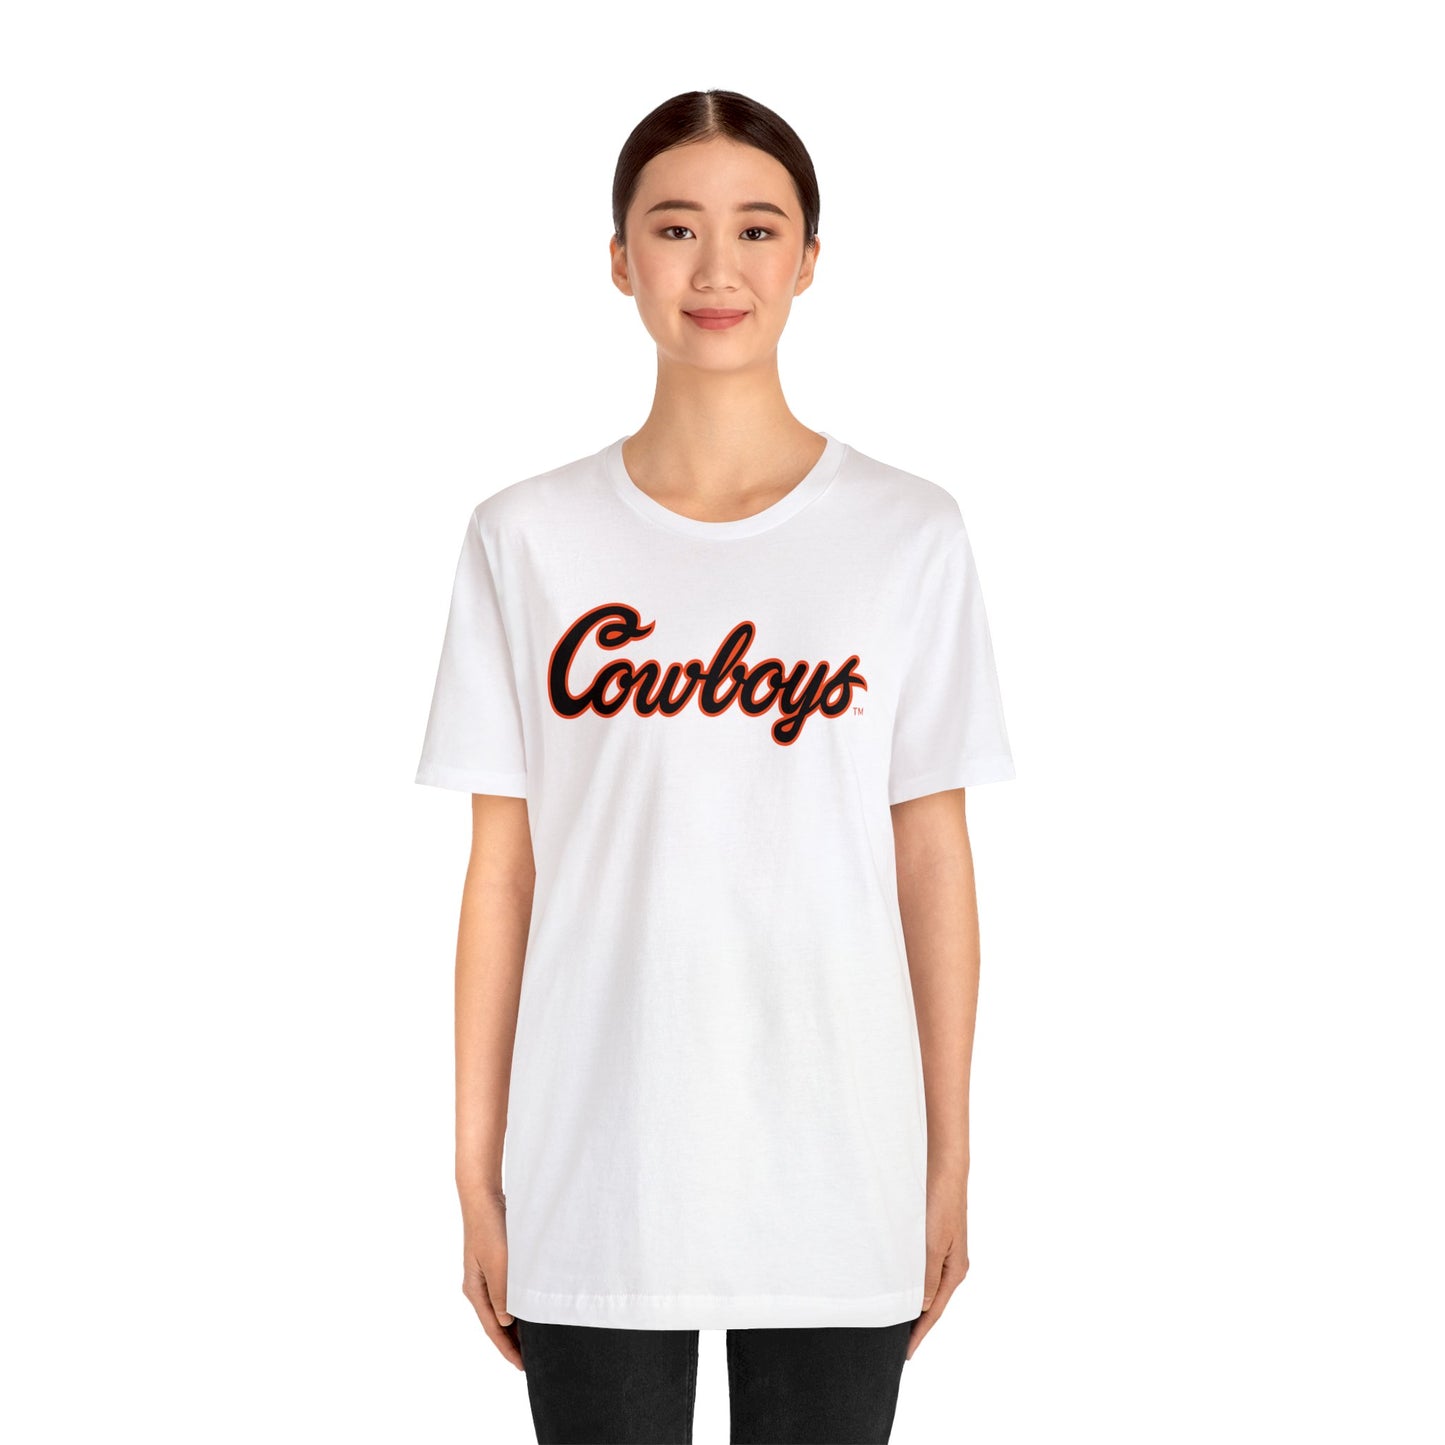 Cole Birmingham #67 Cursive Cowboys T-Shirt